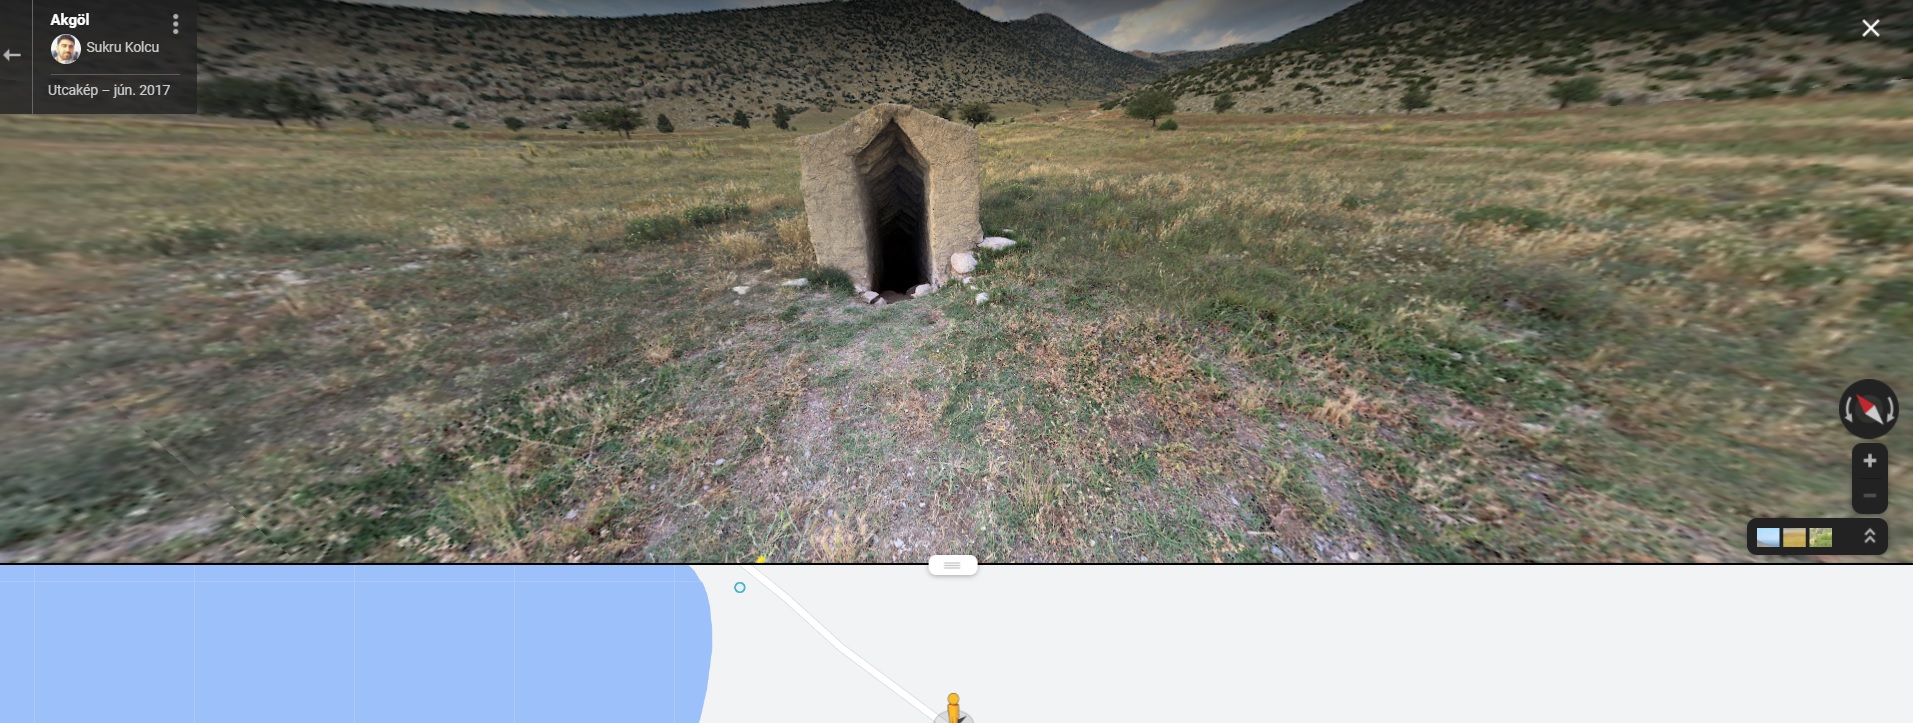 Rejtélyes kaput találtak a Google Térképen